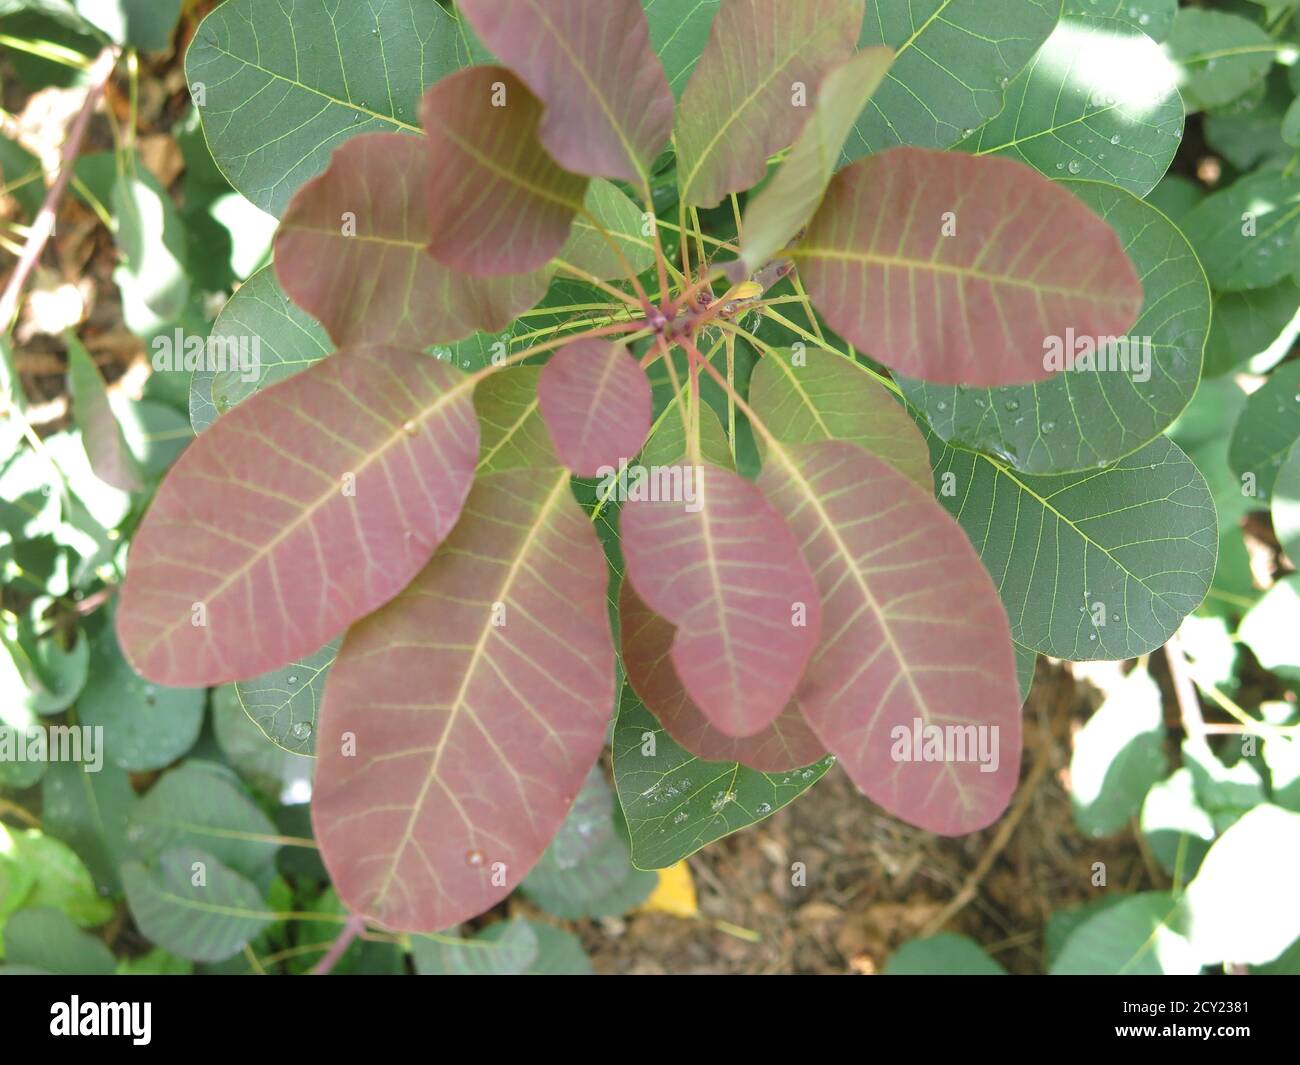 Nahaufnahme der kupferfarbenen bronzenen Blätter im Herbst des Rauchbaums, Cotinus coggygria folius Purpurreis, auch bekannt als venezianischer Sumach Stockfoto